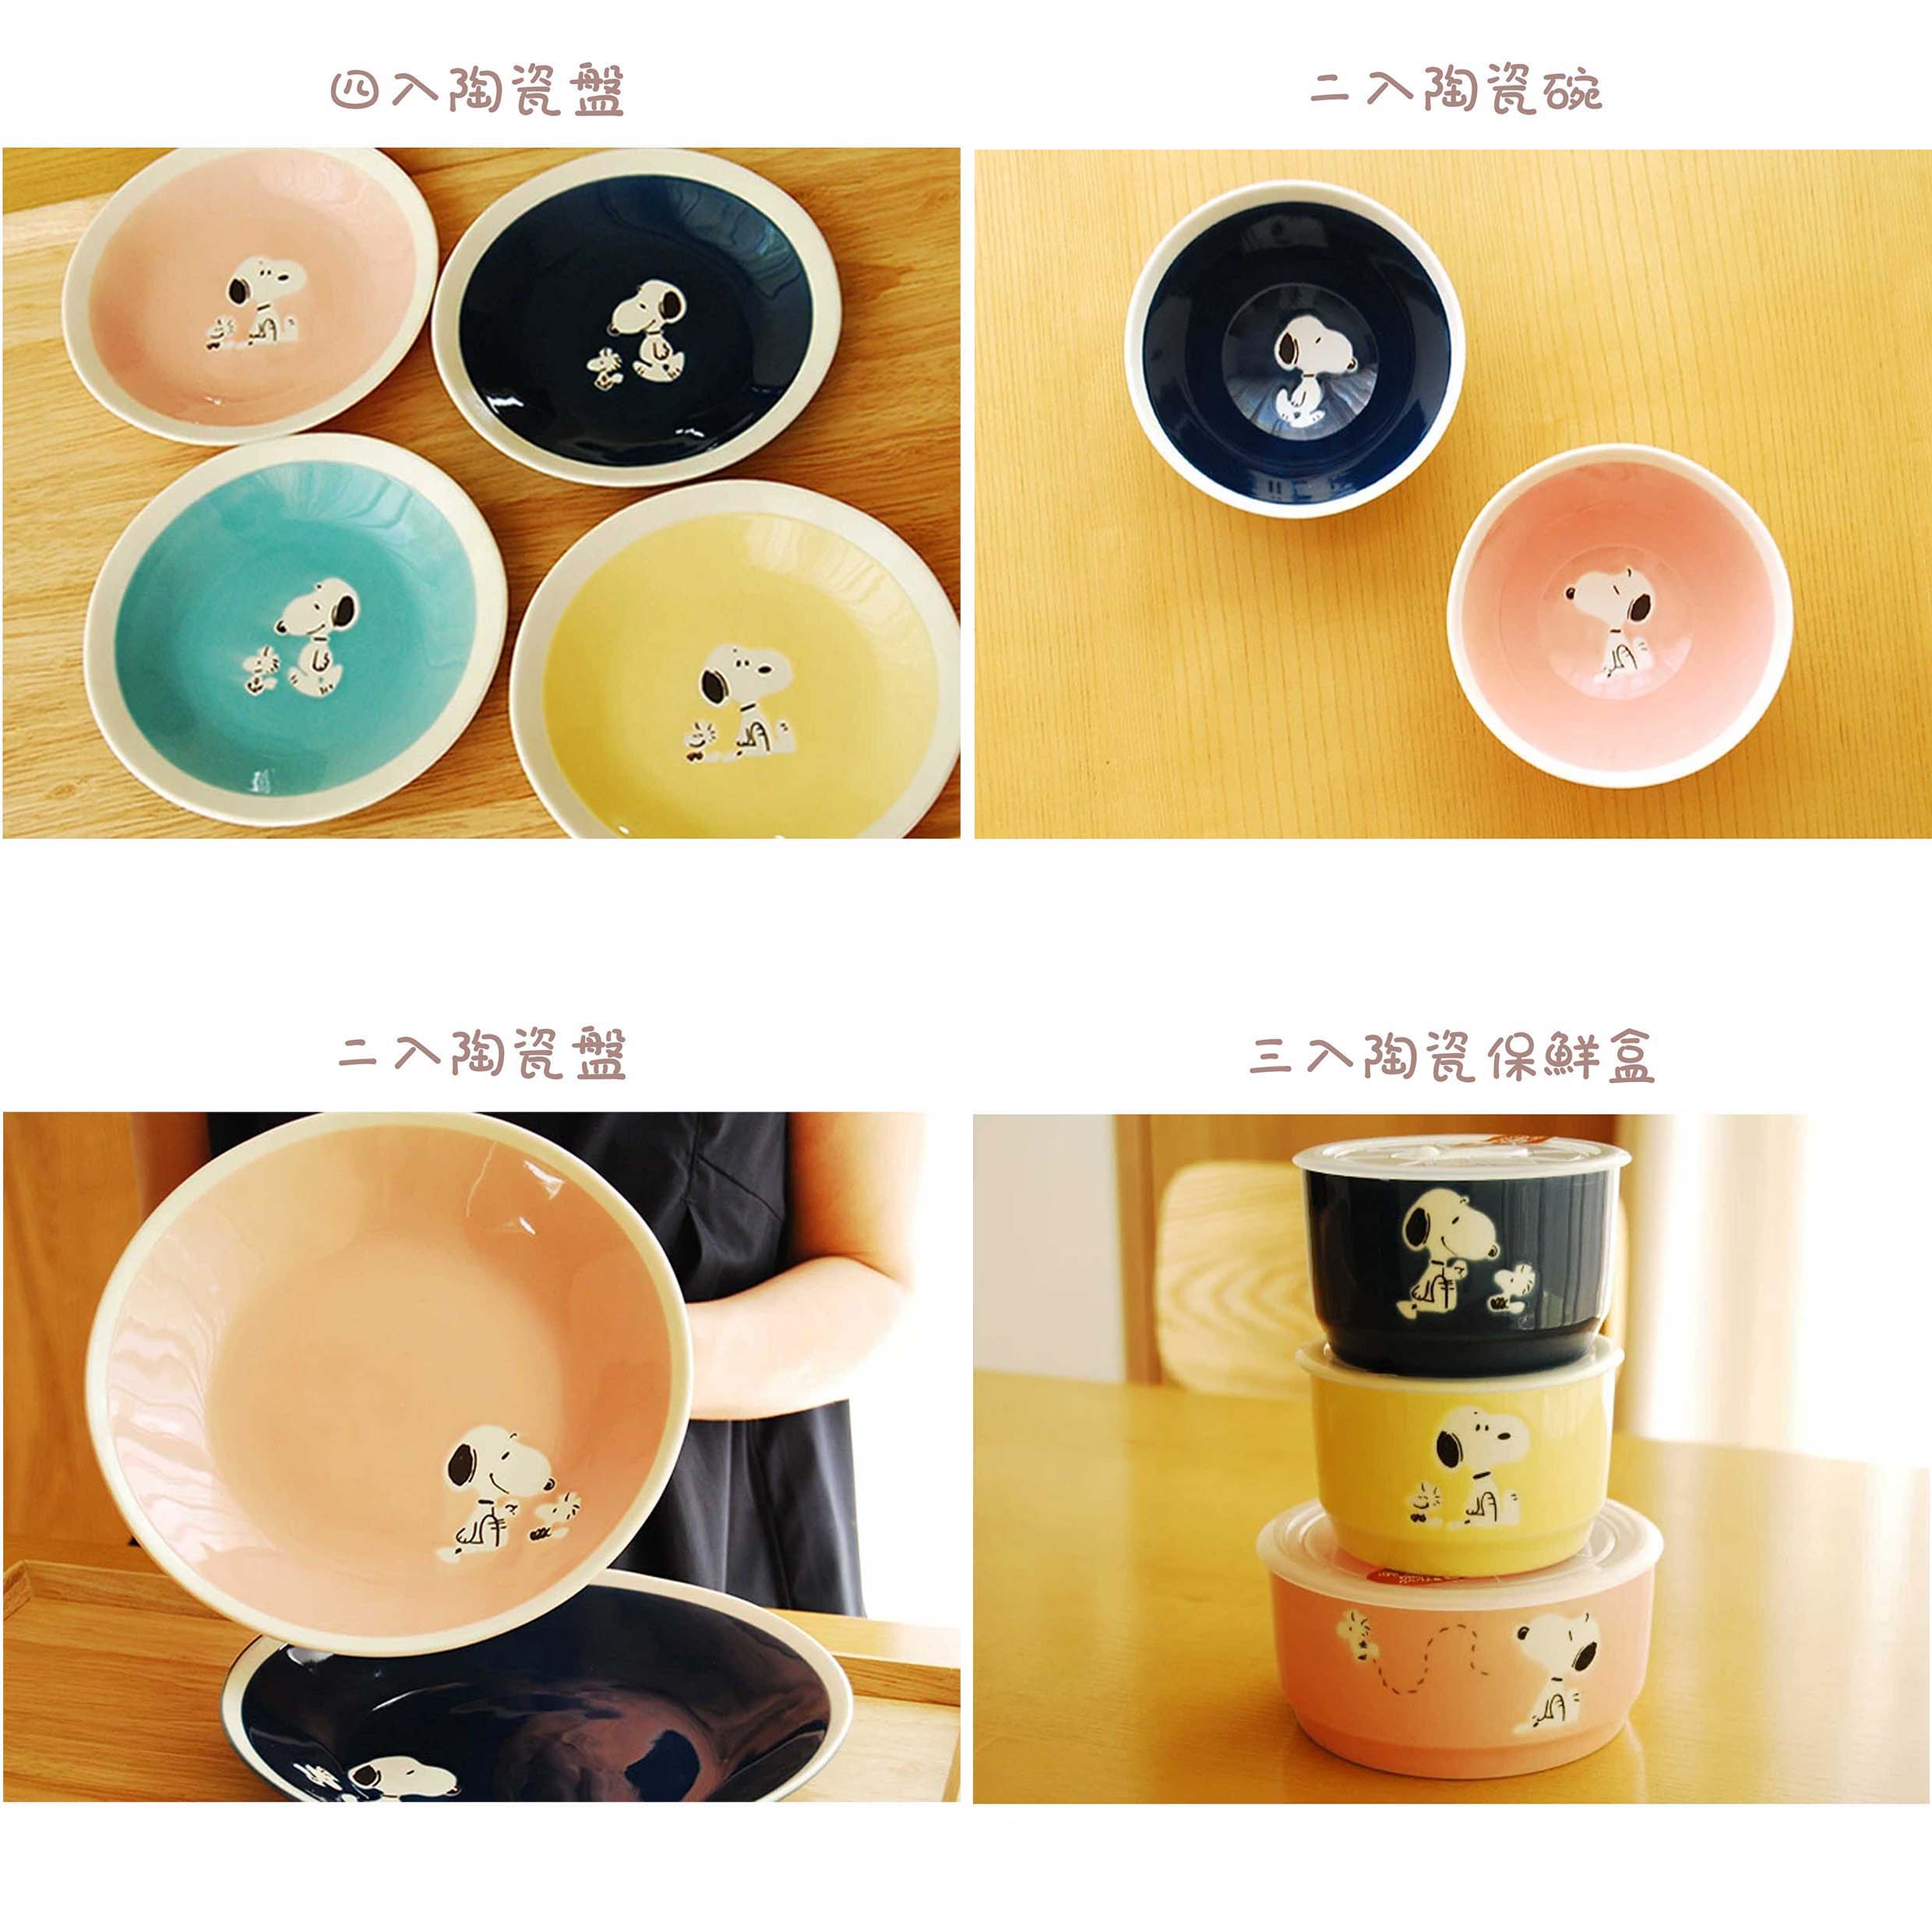 陶瓷餐具系列 陶瓷盤 保鮮碗-史努比 SNOOPY PEANUTS 日本進口正版授權